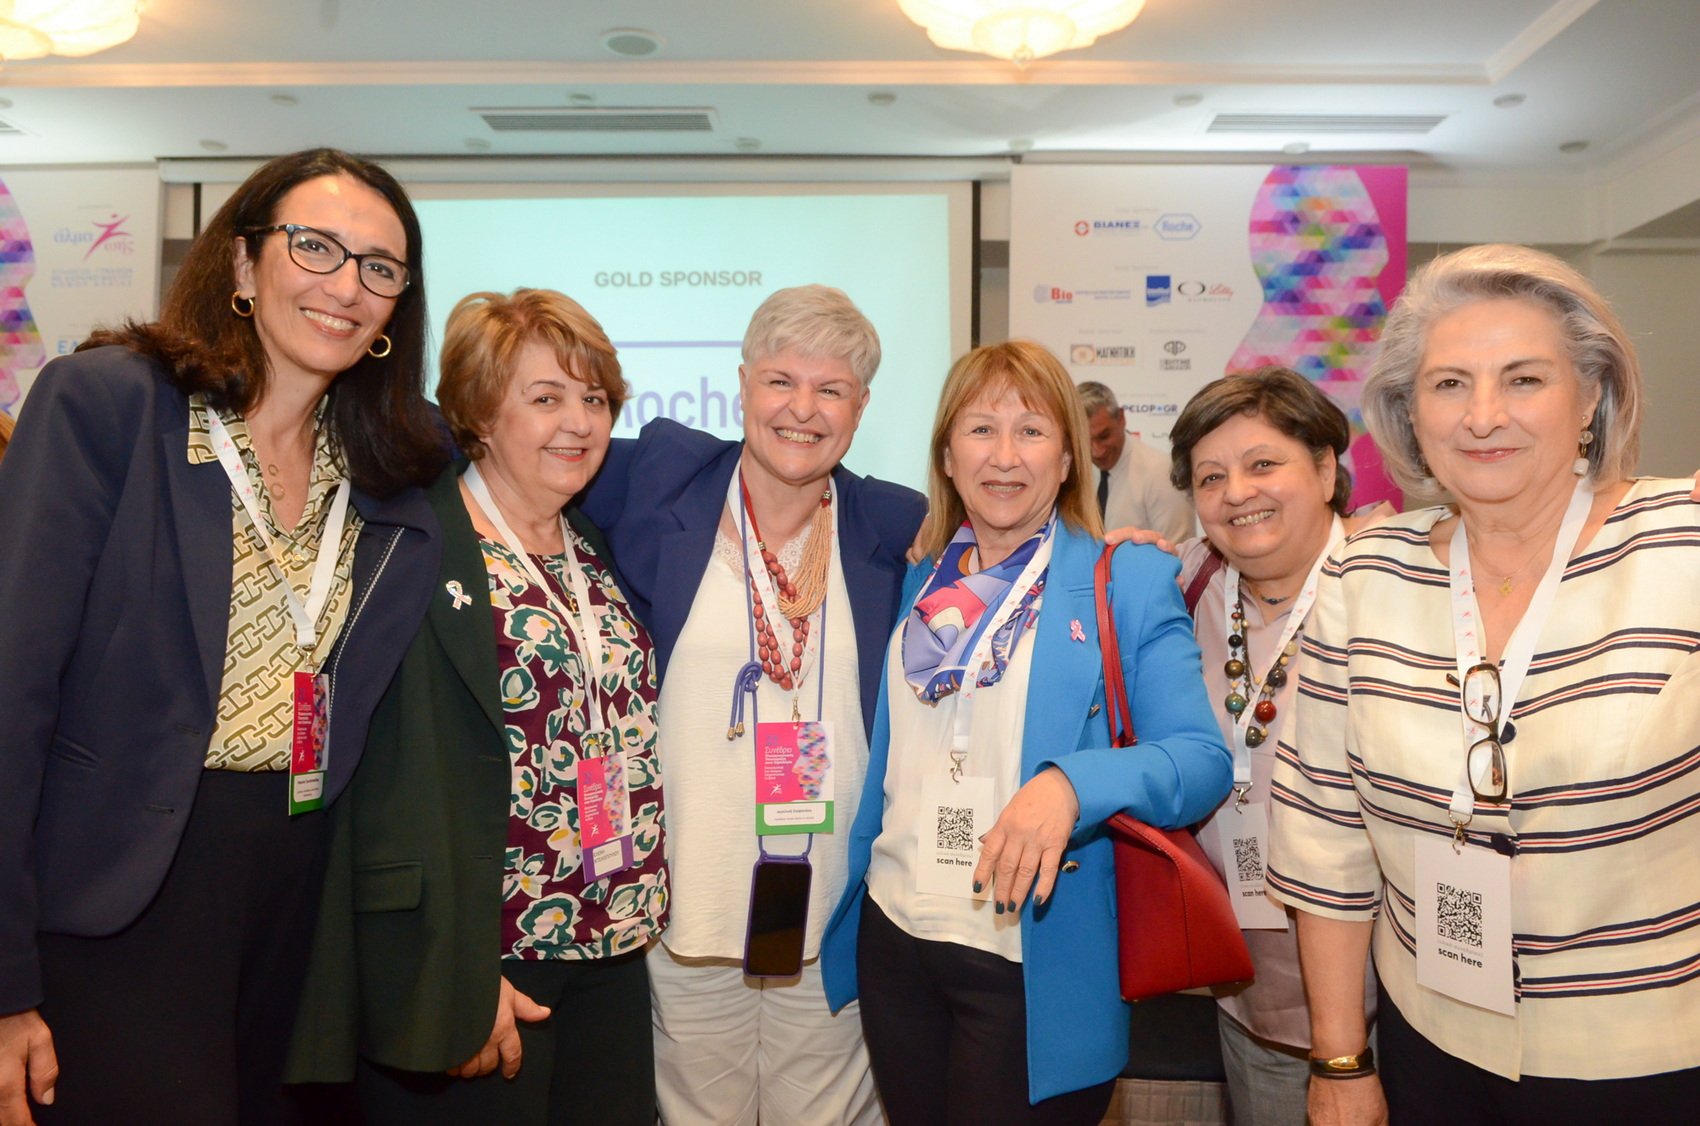 ΑΛΜΑ ΖΩΗΣ Ν.Αχαΐας: Άκρως επιτυχημένο το 2ο Συνέδριο Ψυχοκοινωνικής Υποστήριξης στην Ογκολογία - ΦΩΤΟ